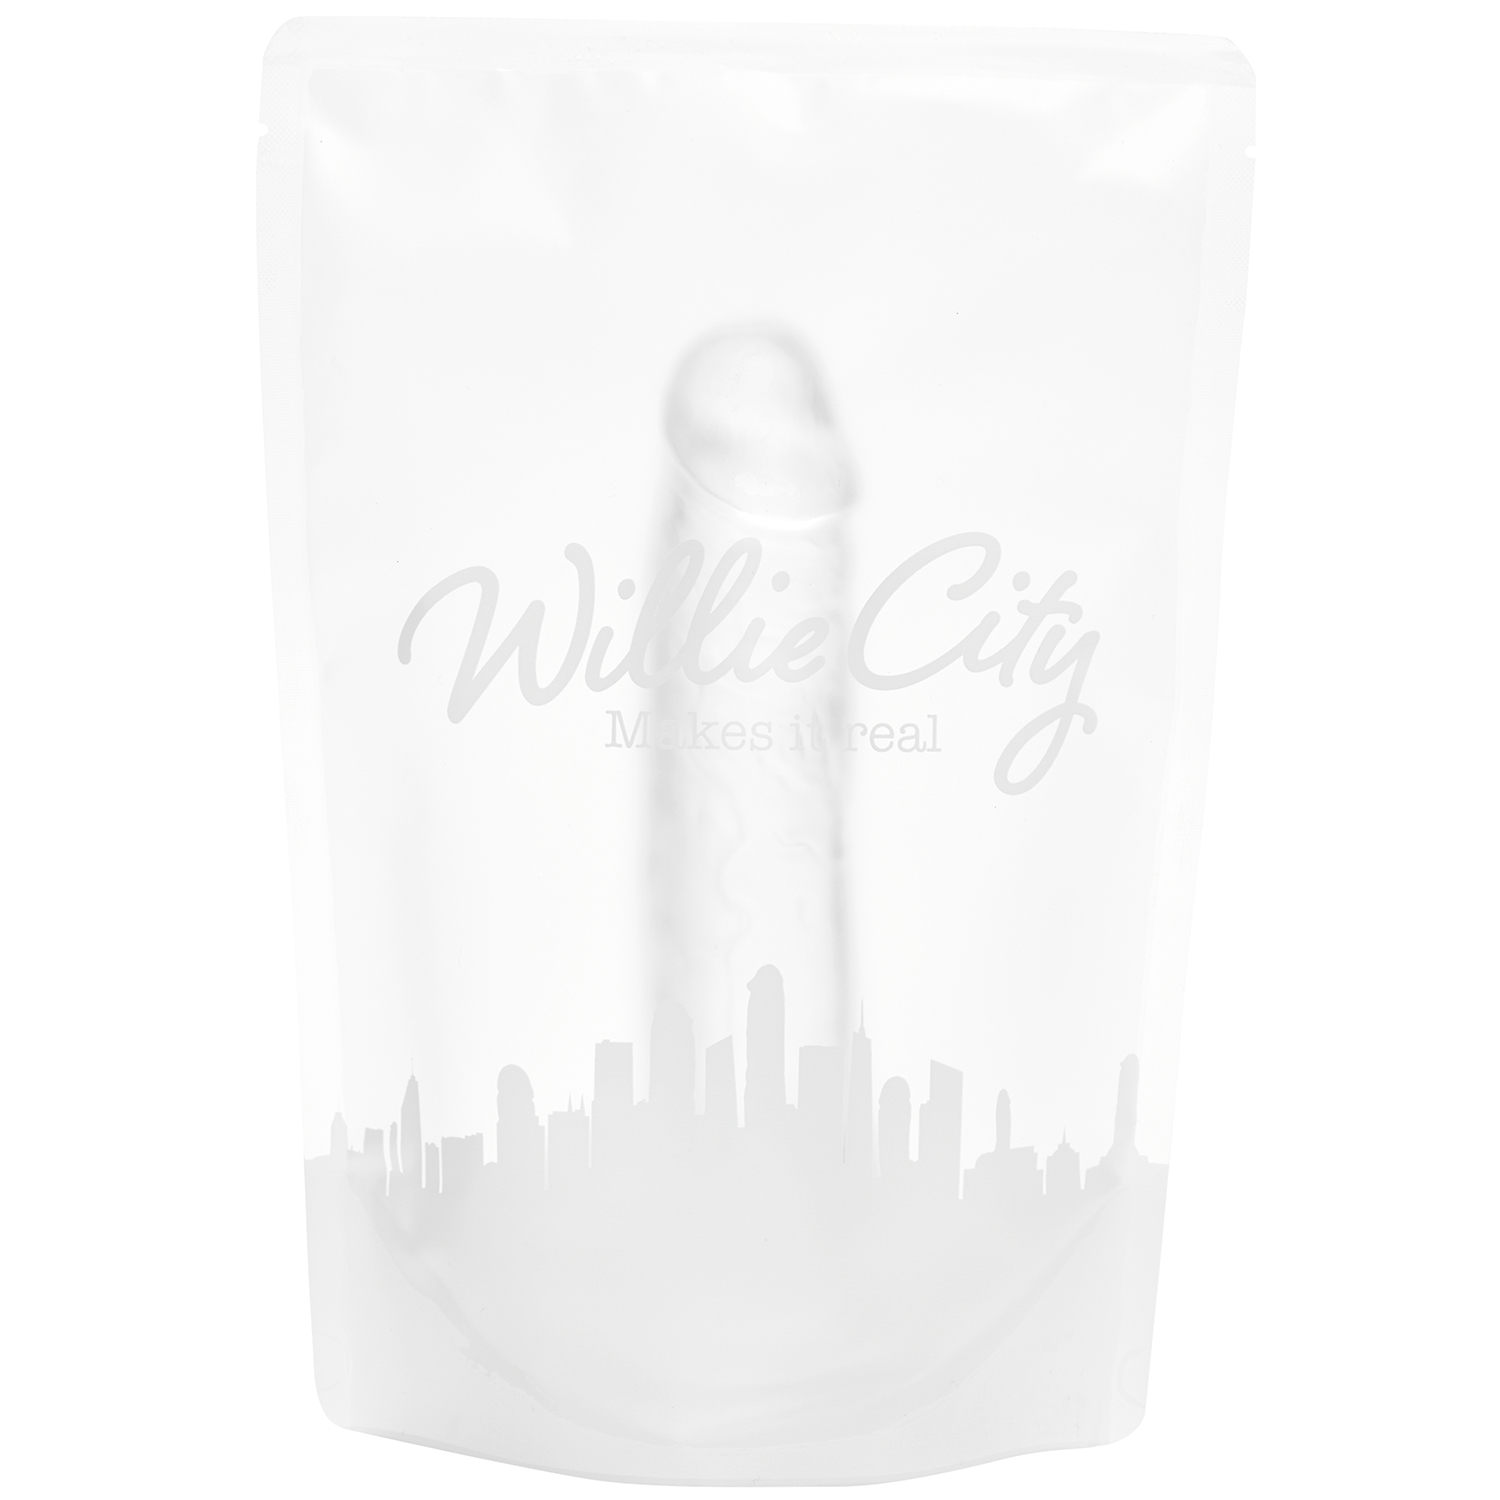 Willie City Classic Realistisk Klar Dildo 19,5 cm  - Klar